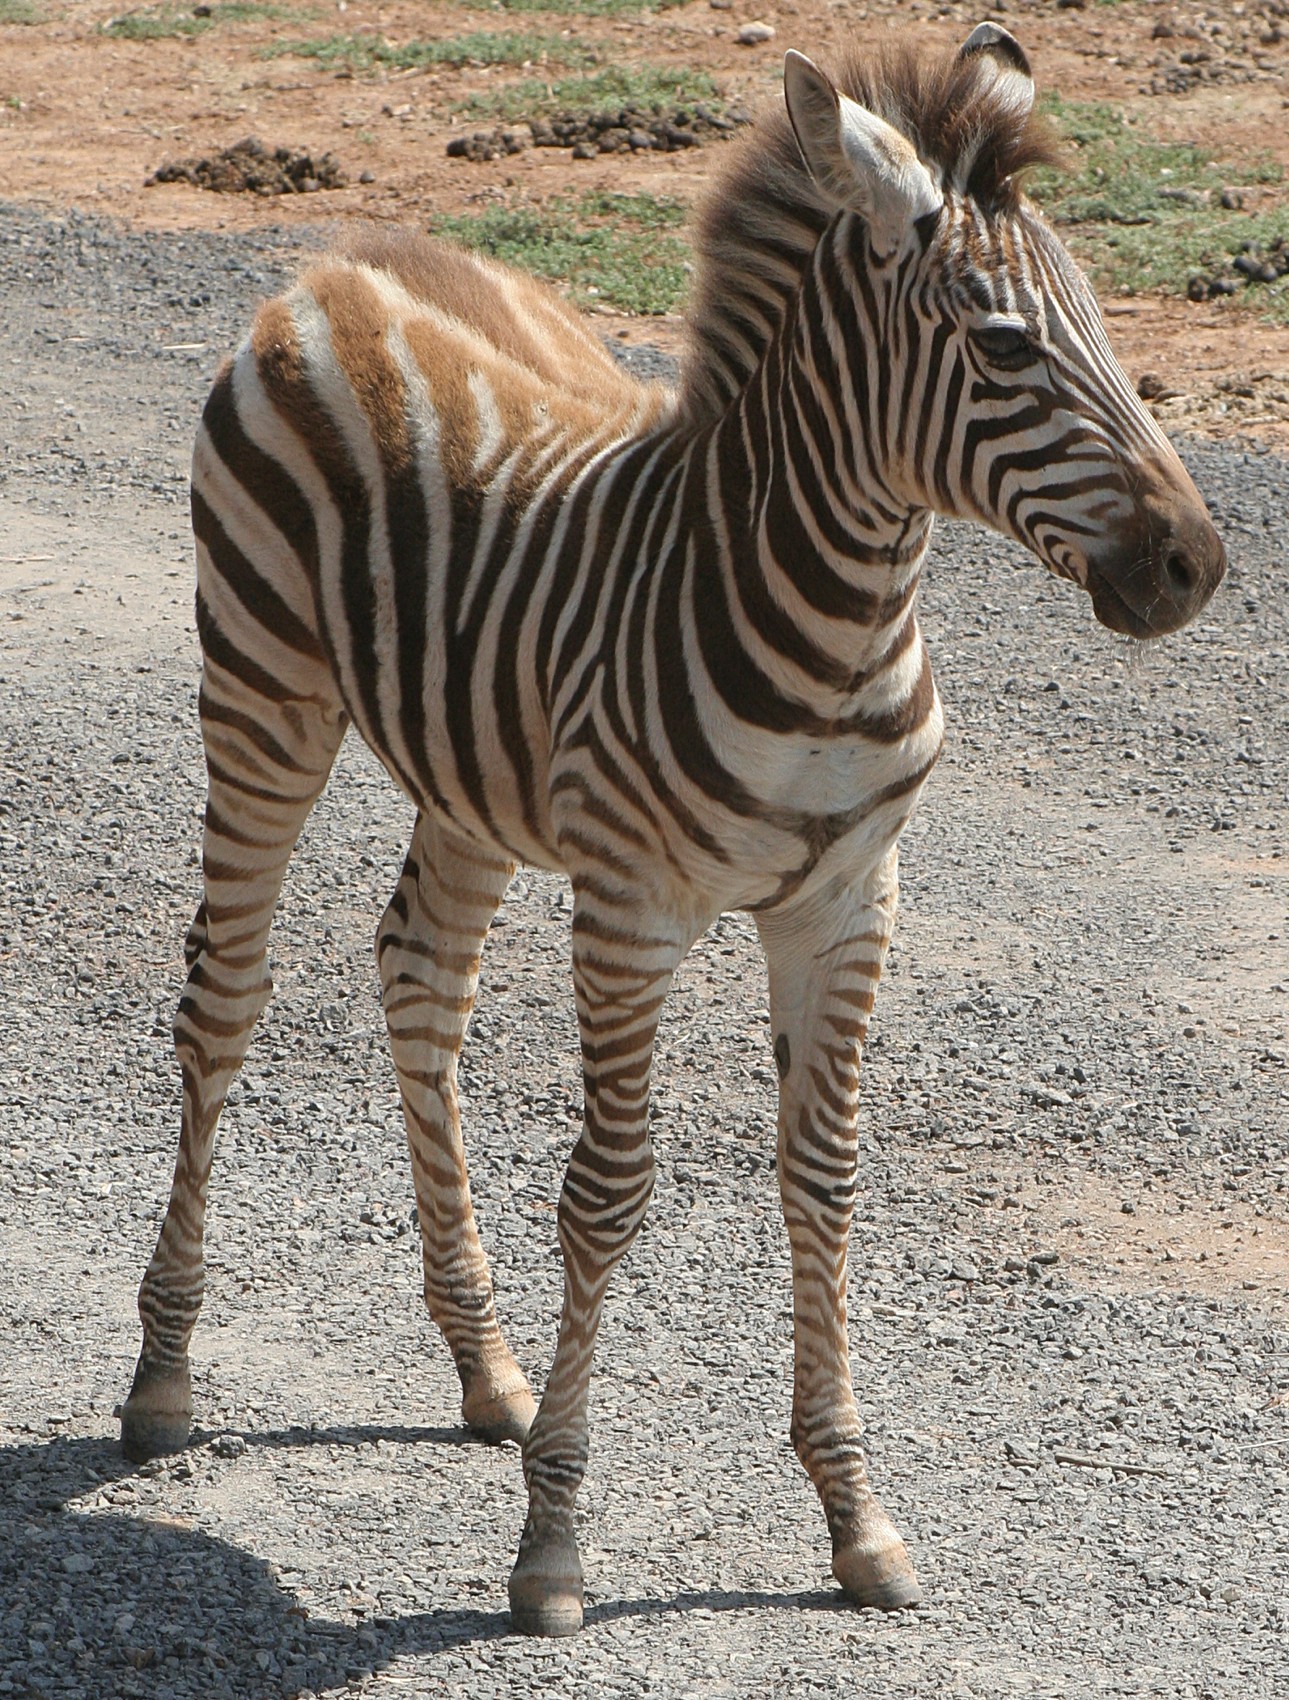 Cute baby Zebra